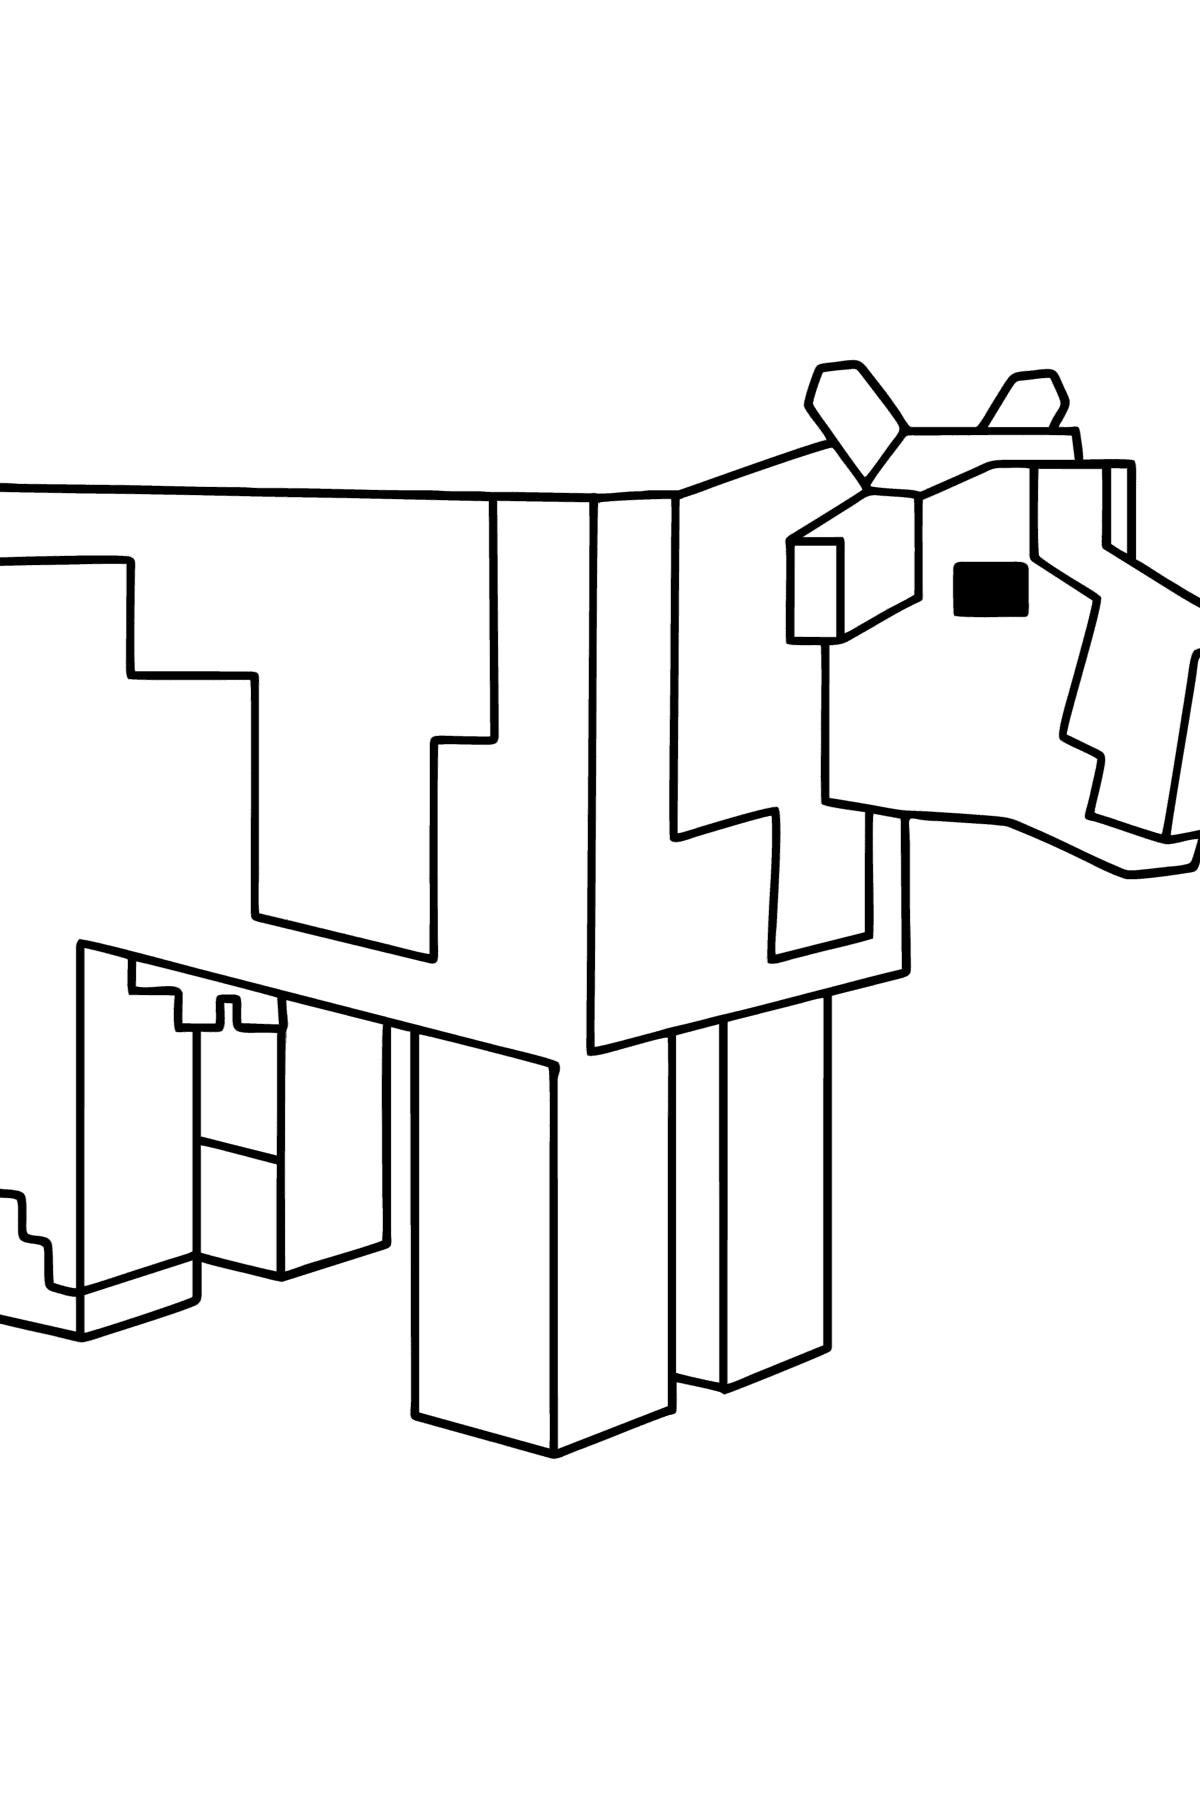 Boyama sayfası Minecraft Cow - Boyamalar çocuklar için